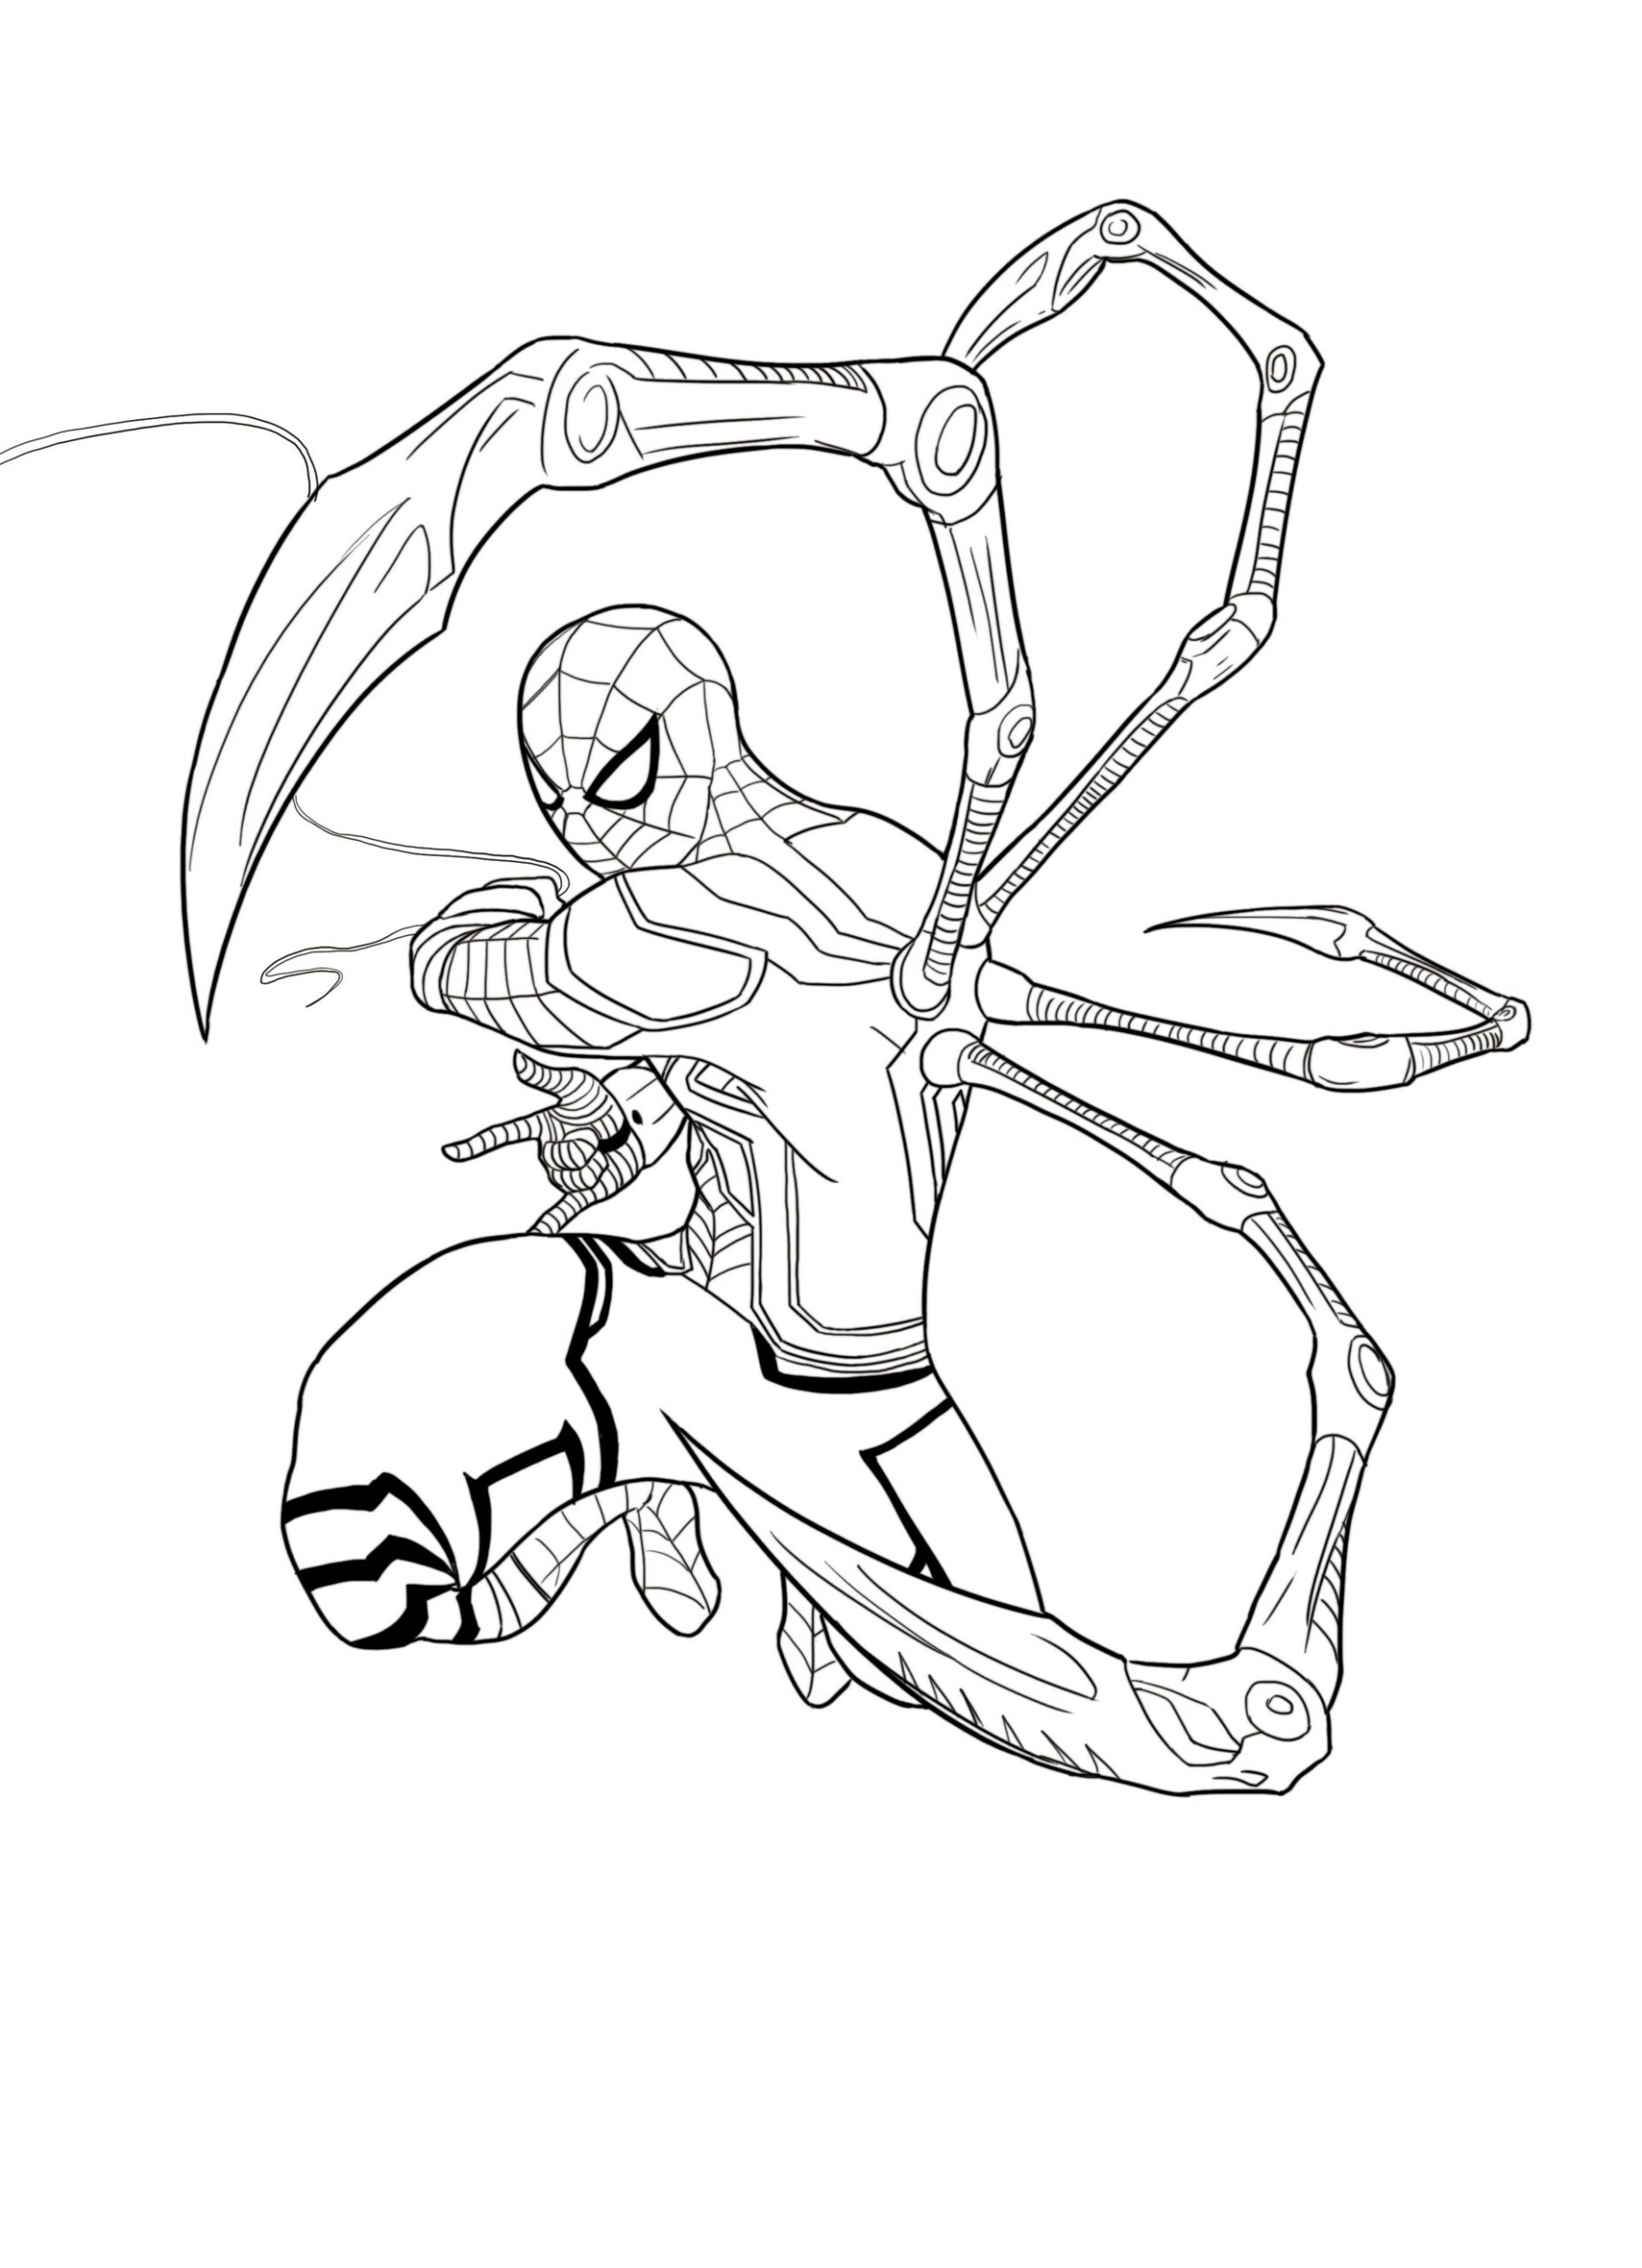 De mechanische benen van Iron Spider-Man zijn duidelijk te zien.